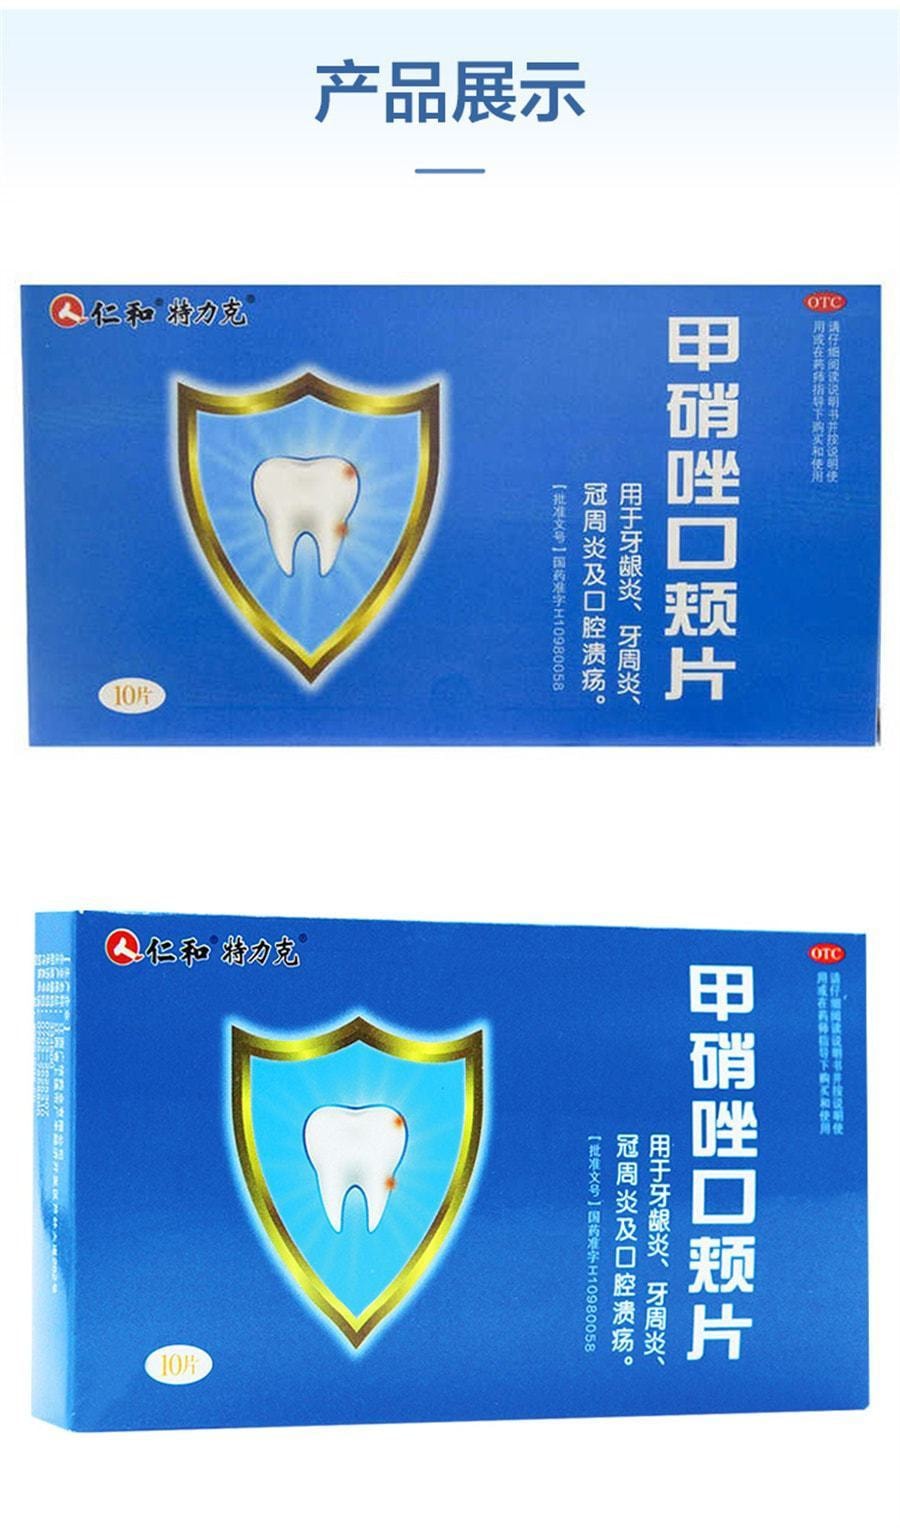 【美国极速发货】仁和 甲硝唑口颊片 适用于牙疼 牙龈肿痛 口腔溃疡10片/盒